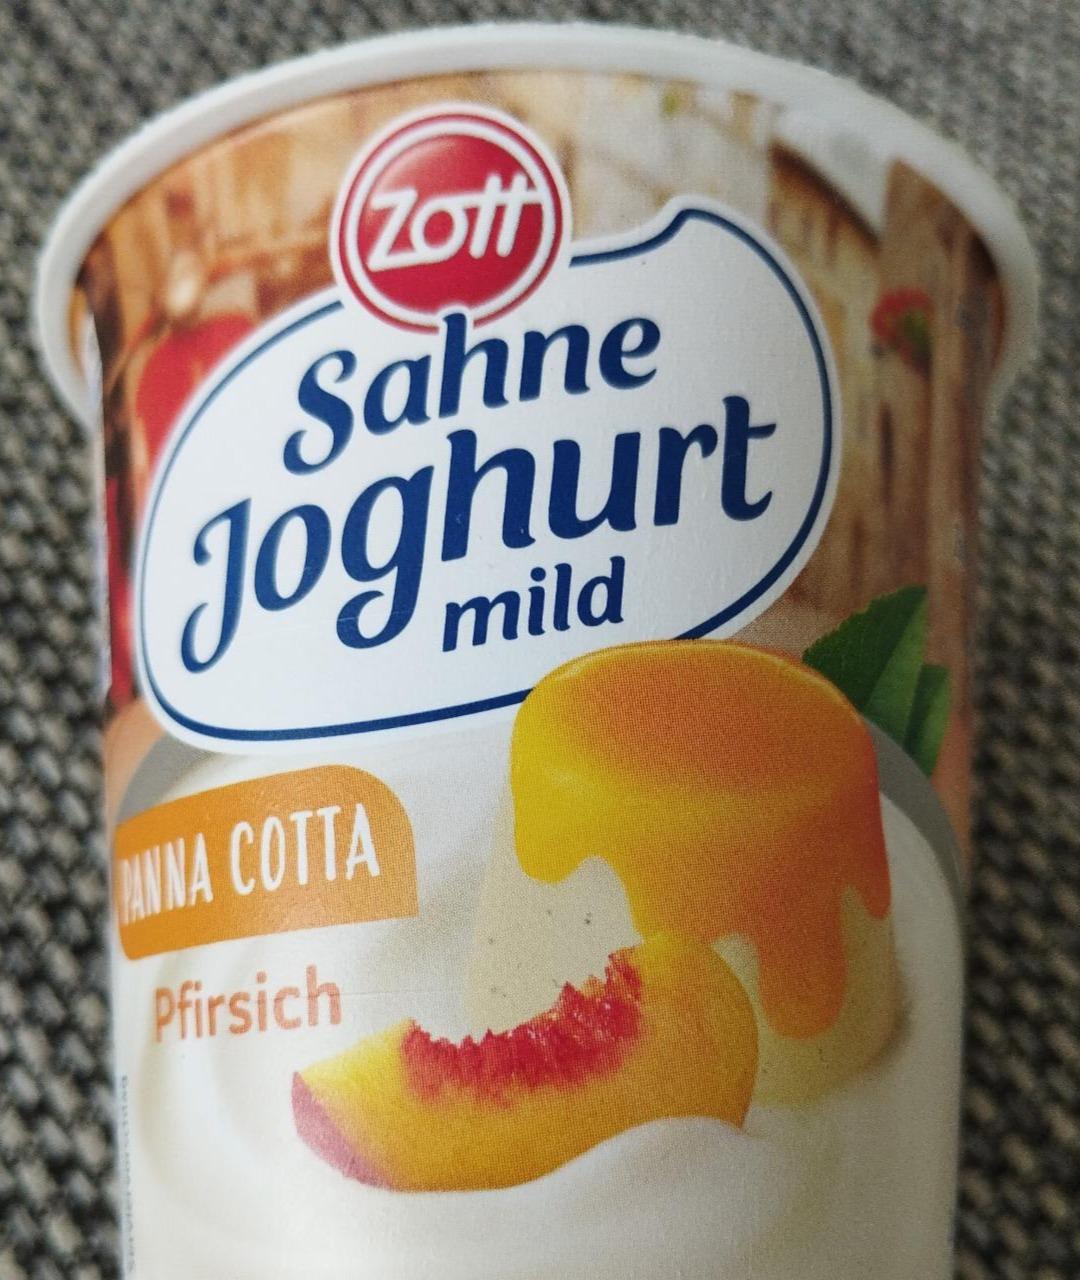 Fotografie - Sahne Joghurt mild Panna Cotta Pfirsich Zott